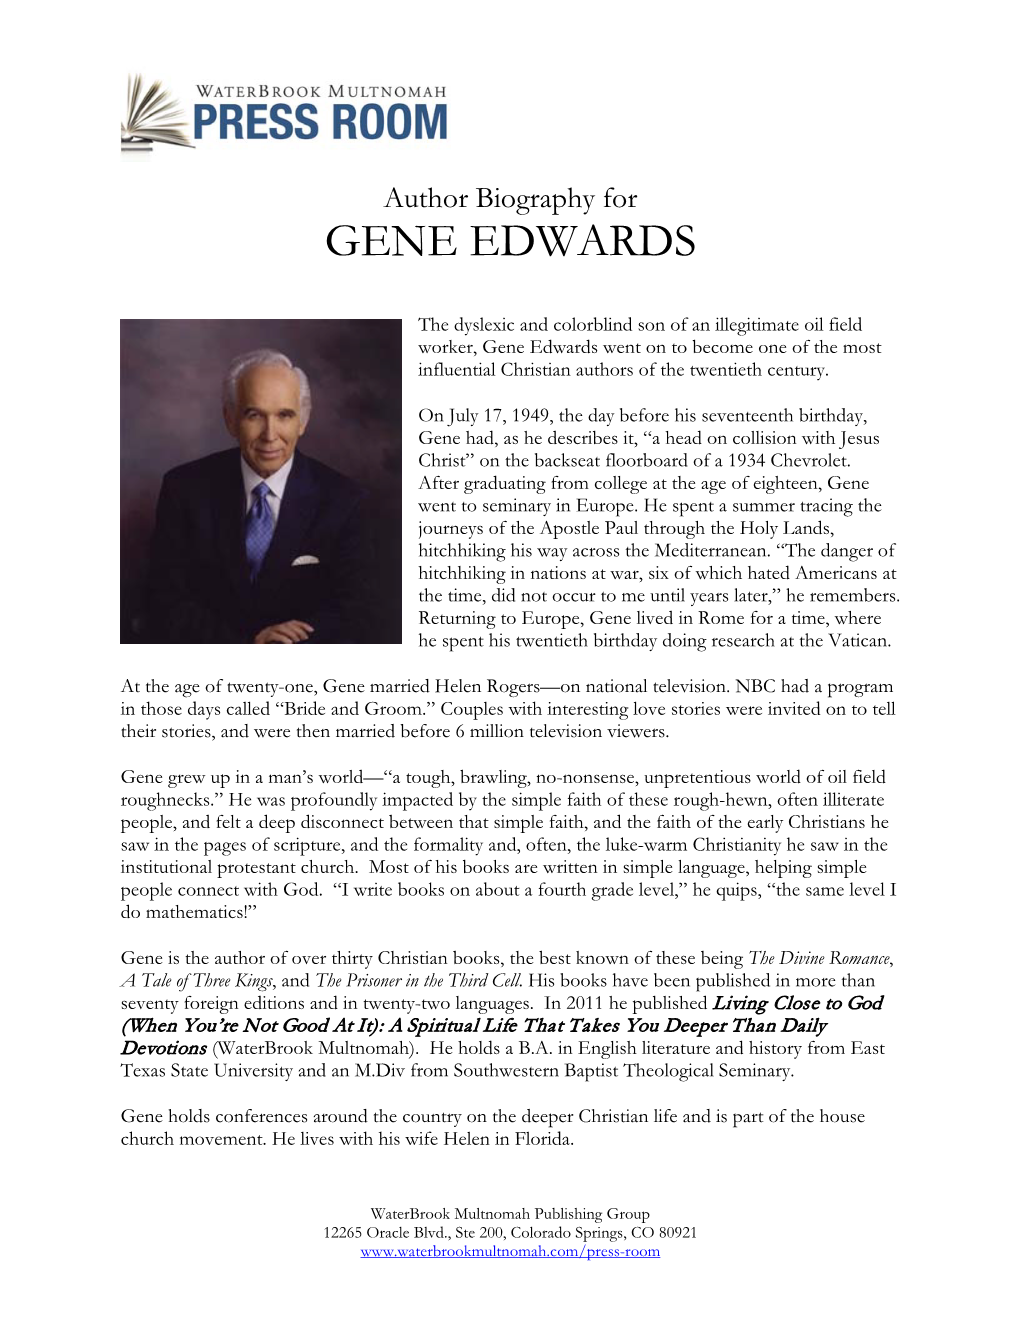 Gene Edwards